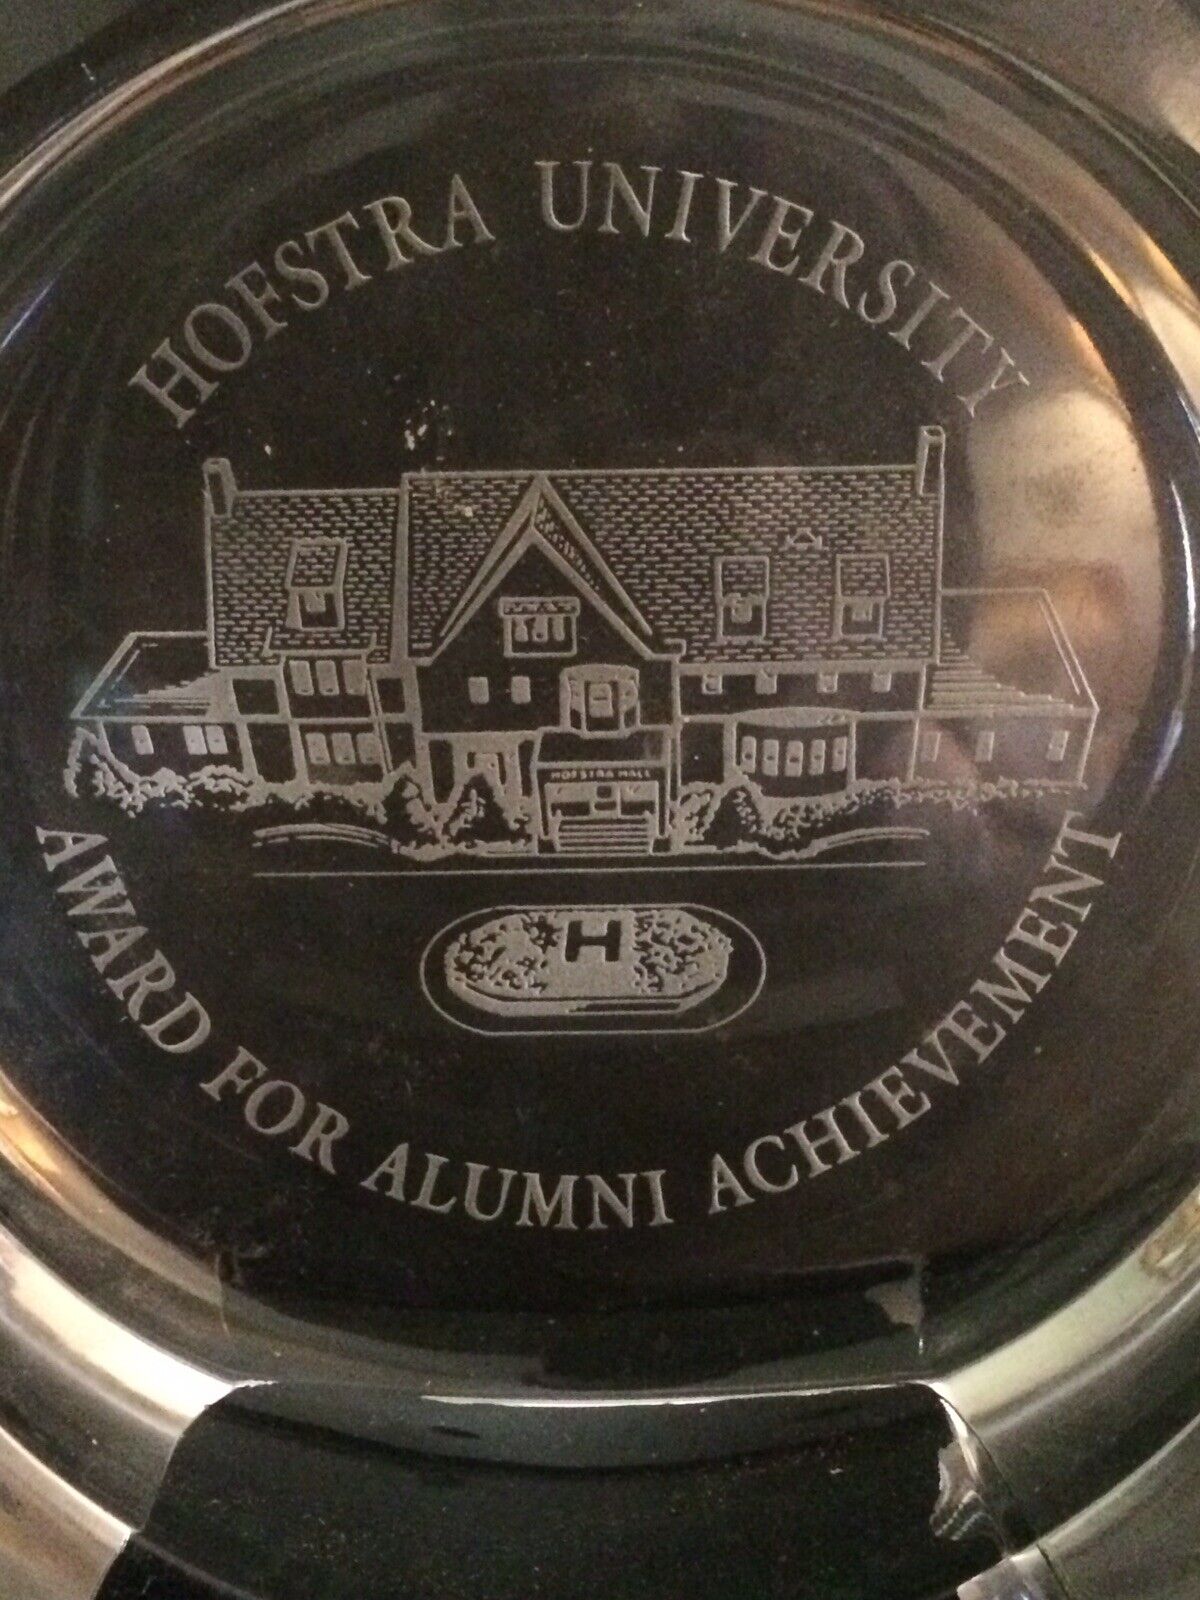 Bernard L Madoff Class of ‘60 Hofstra University Award For Alumni Achievement